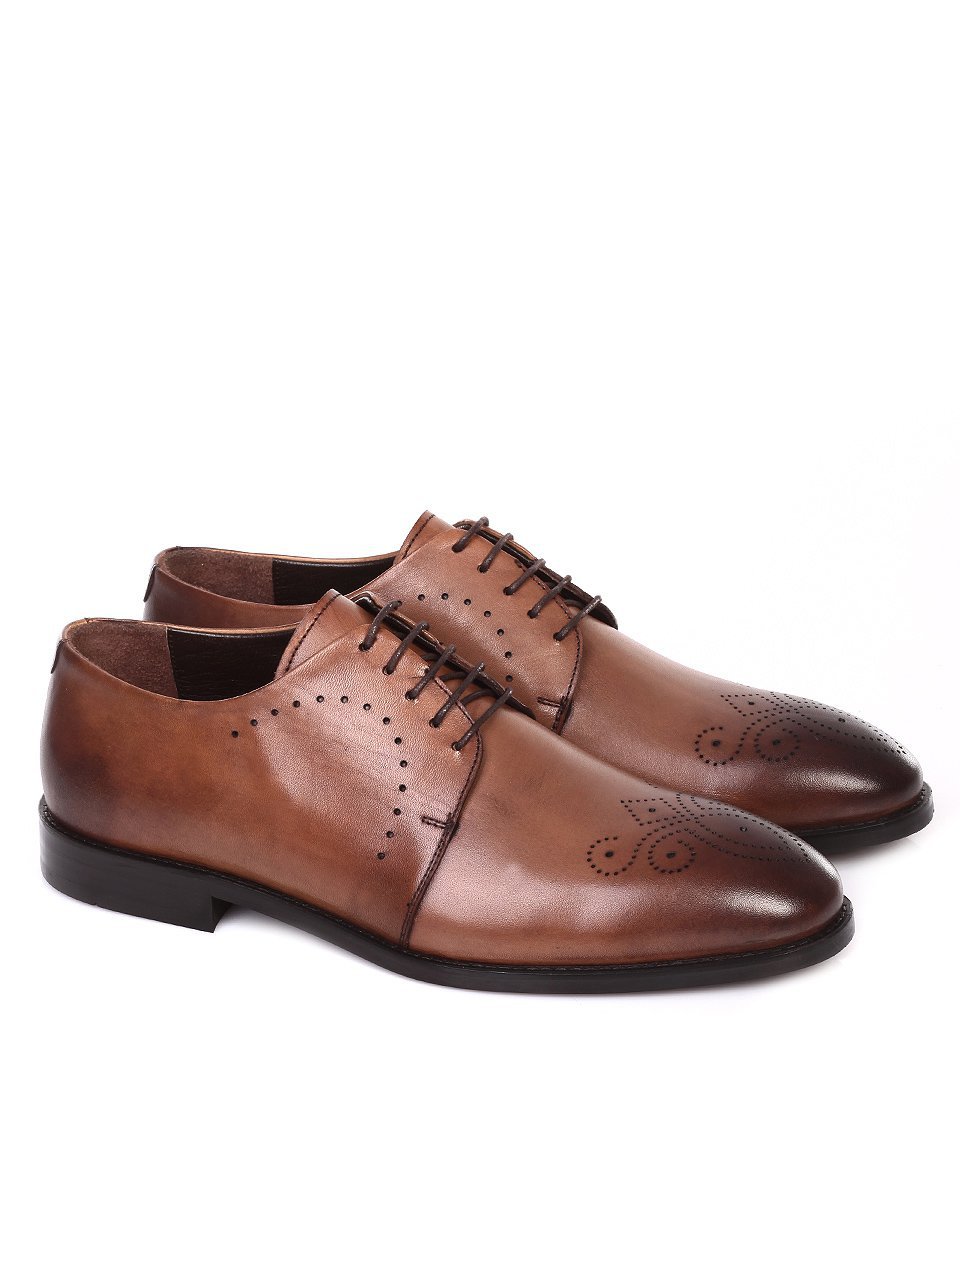 Елегантни мъжки обувки от естествена кожа 7AT-18563 beige